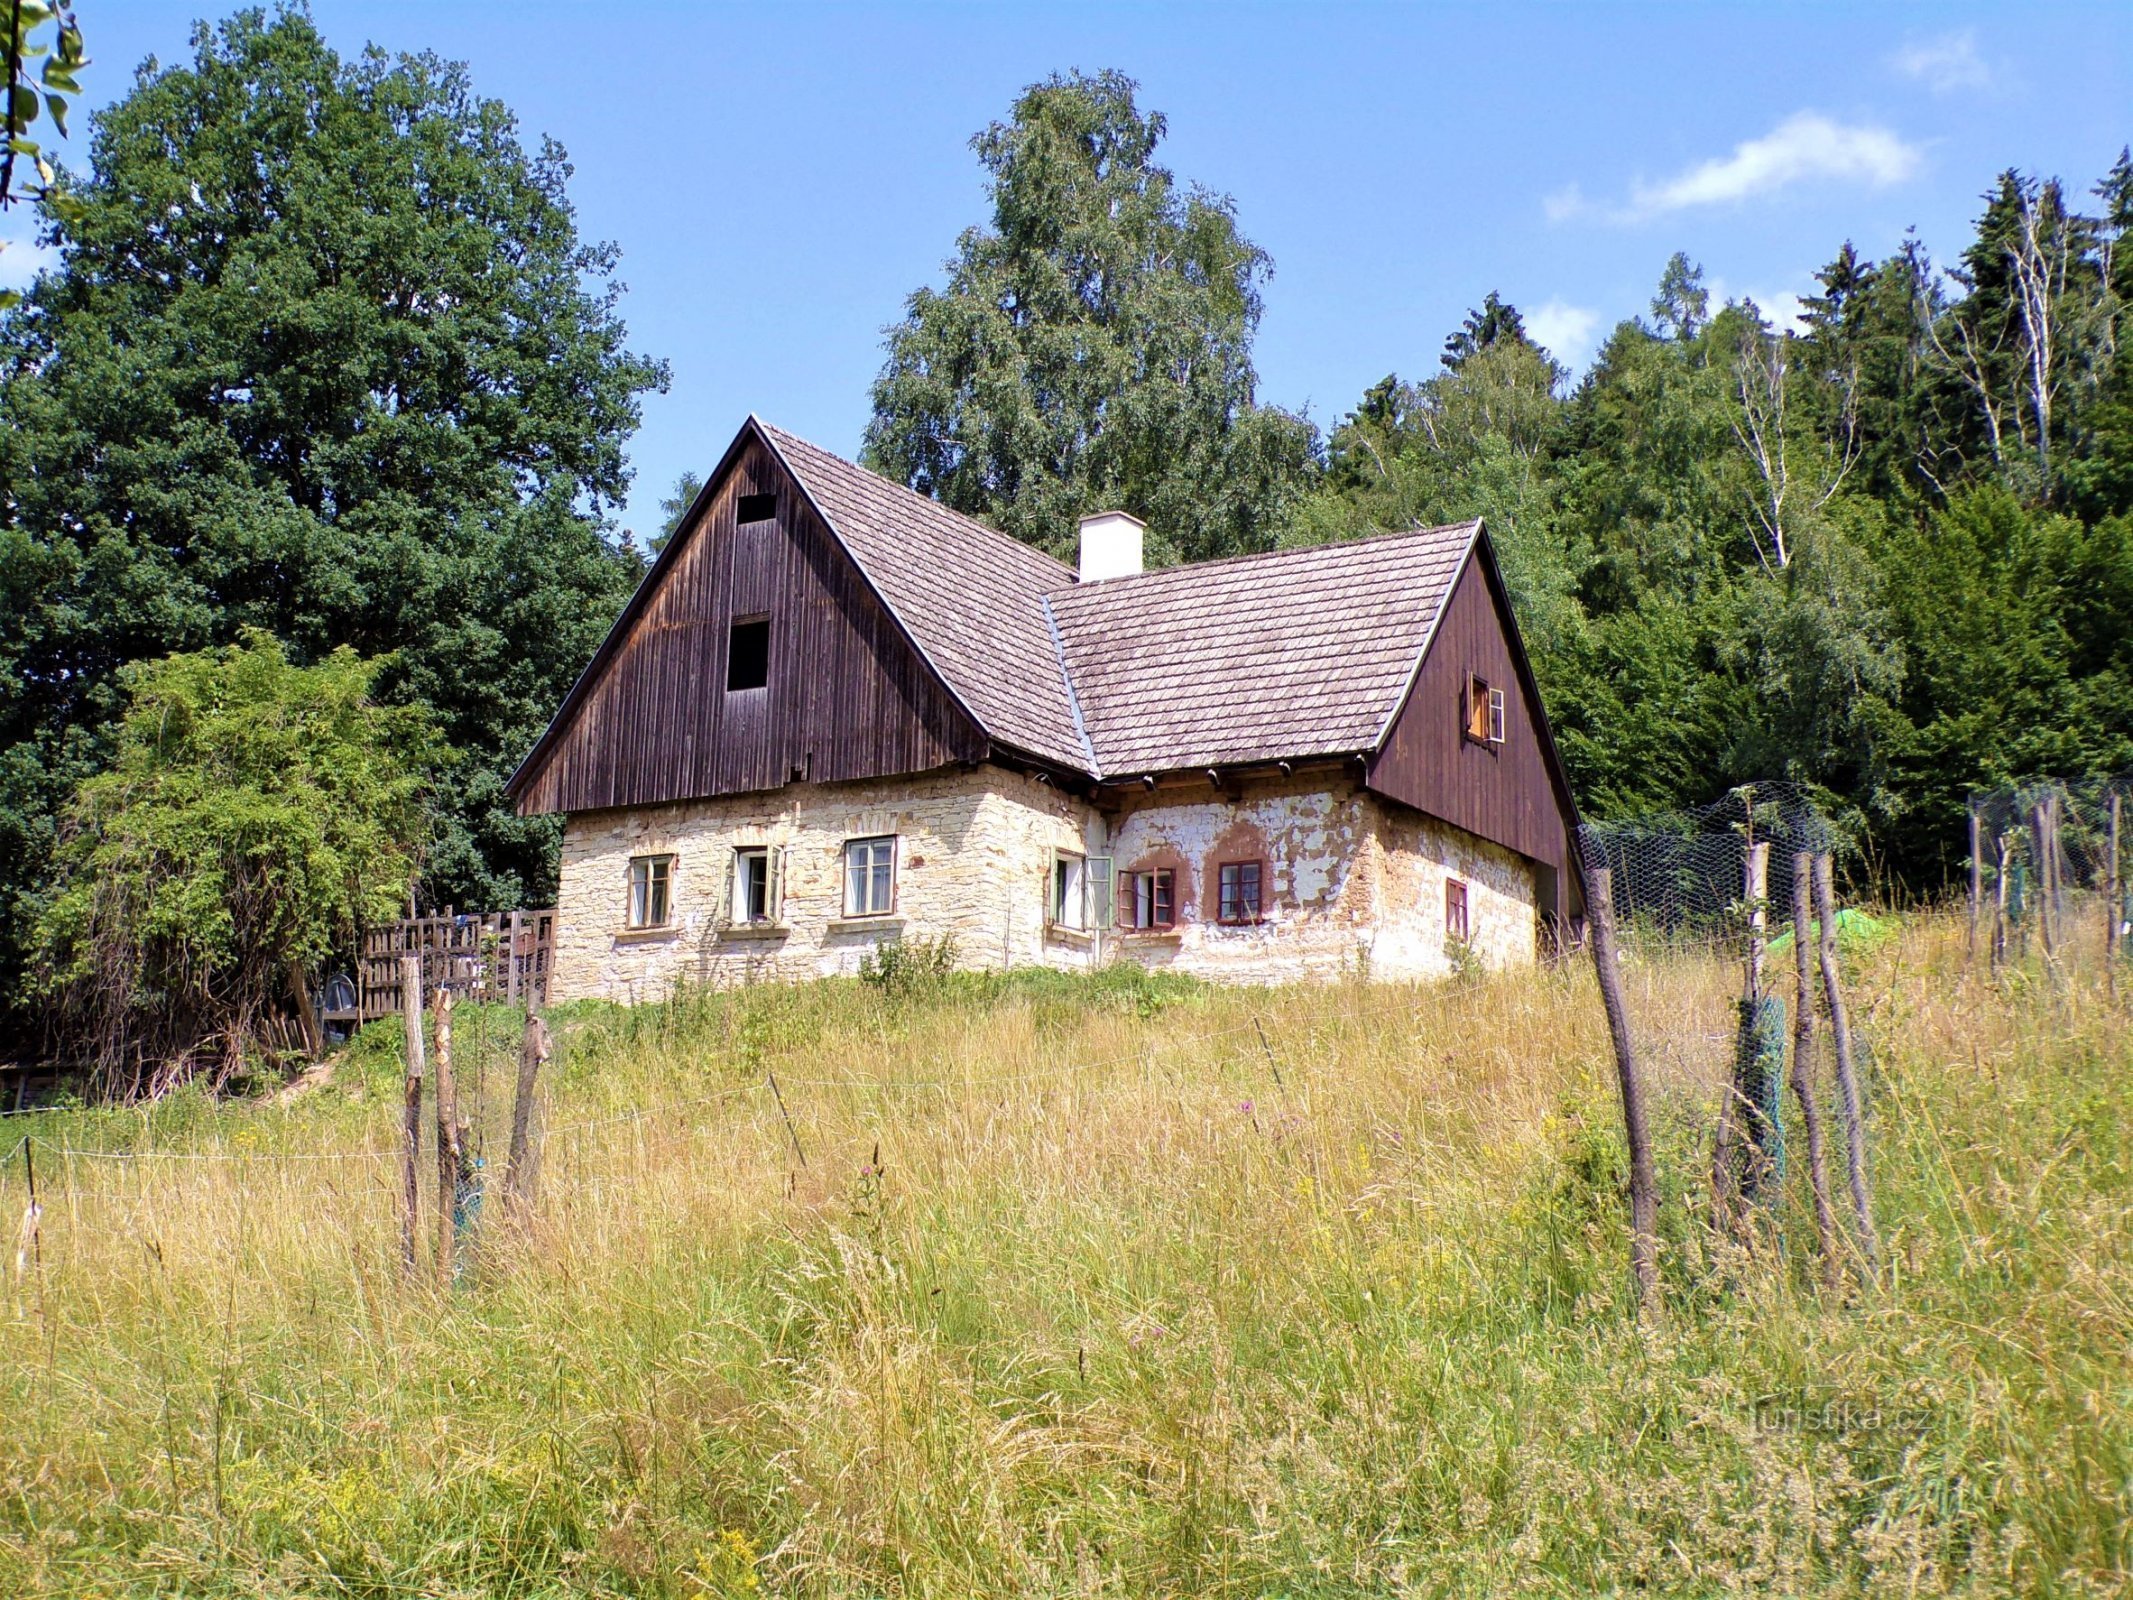 Σπίτι No. 501 στο Bokouš (Velká Bukovina, 13.7.2021/XNUMX/XNUMX)